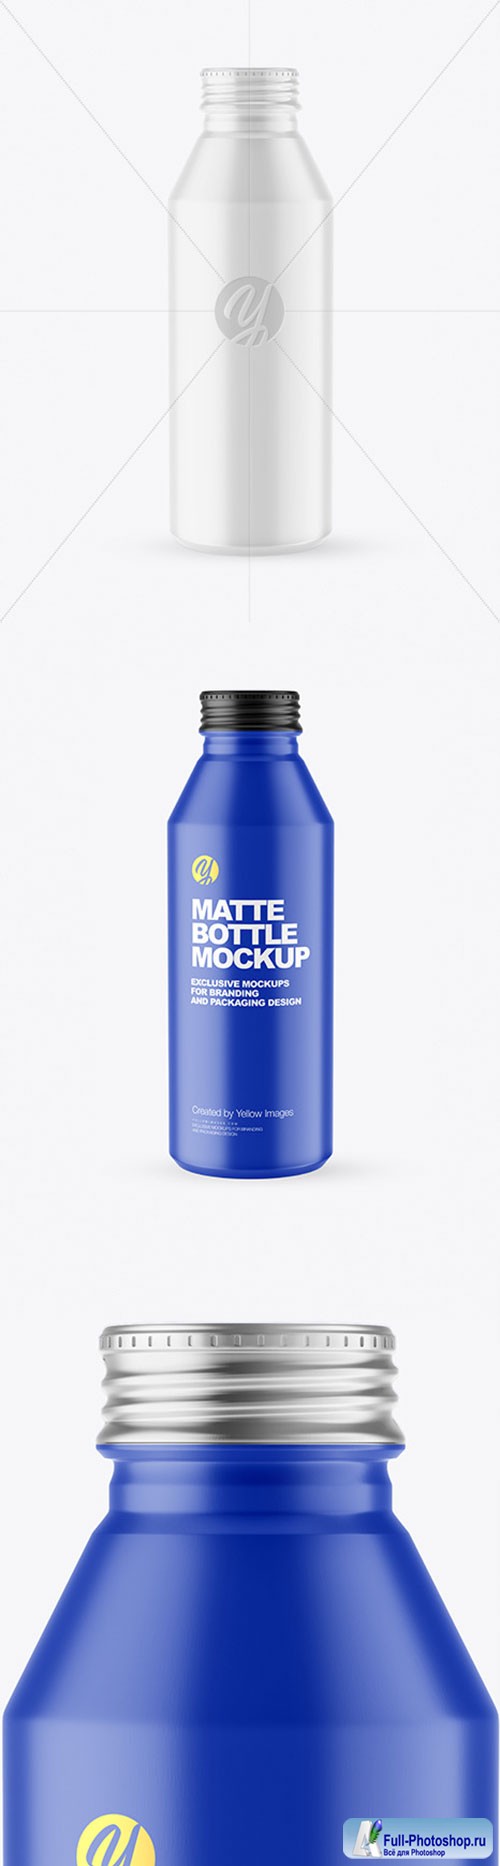  Matte Drink Bottle Mockup 86549